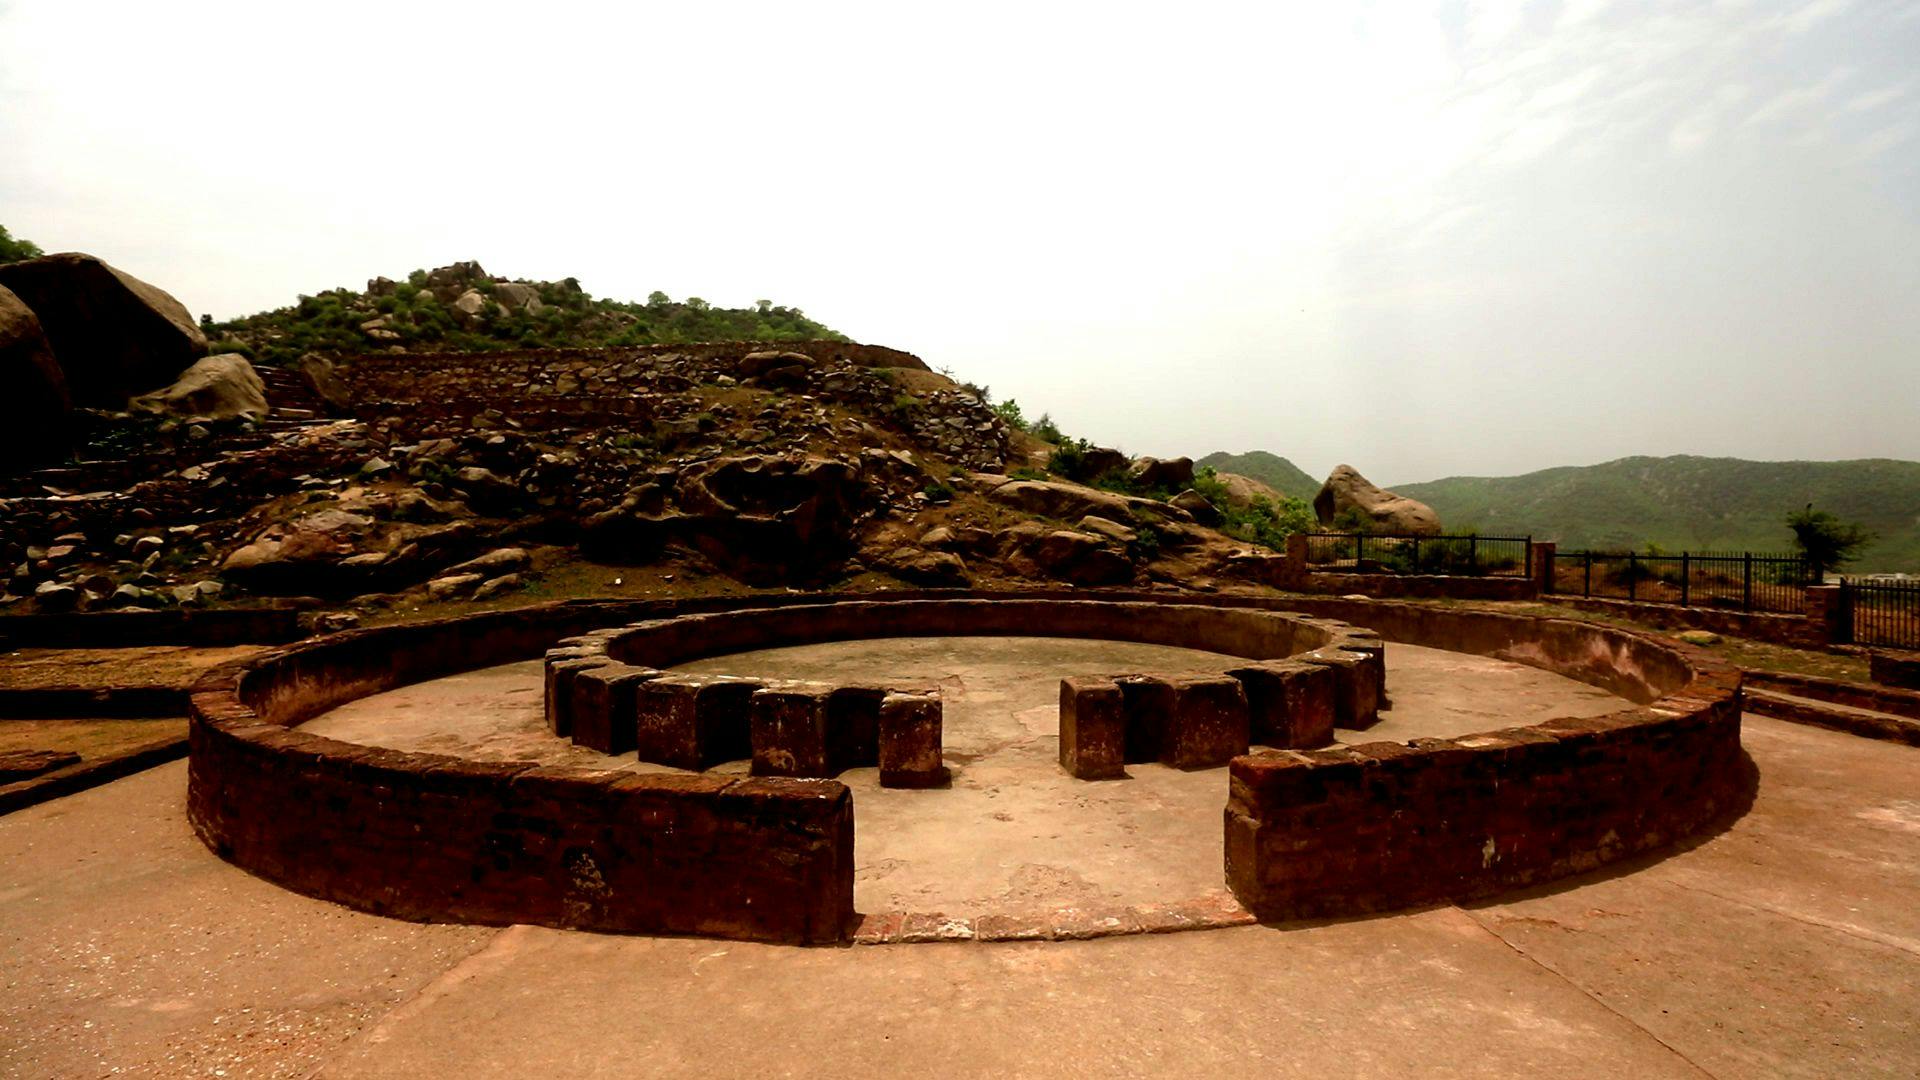 Remains of the circular chaityagriha